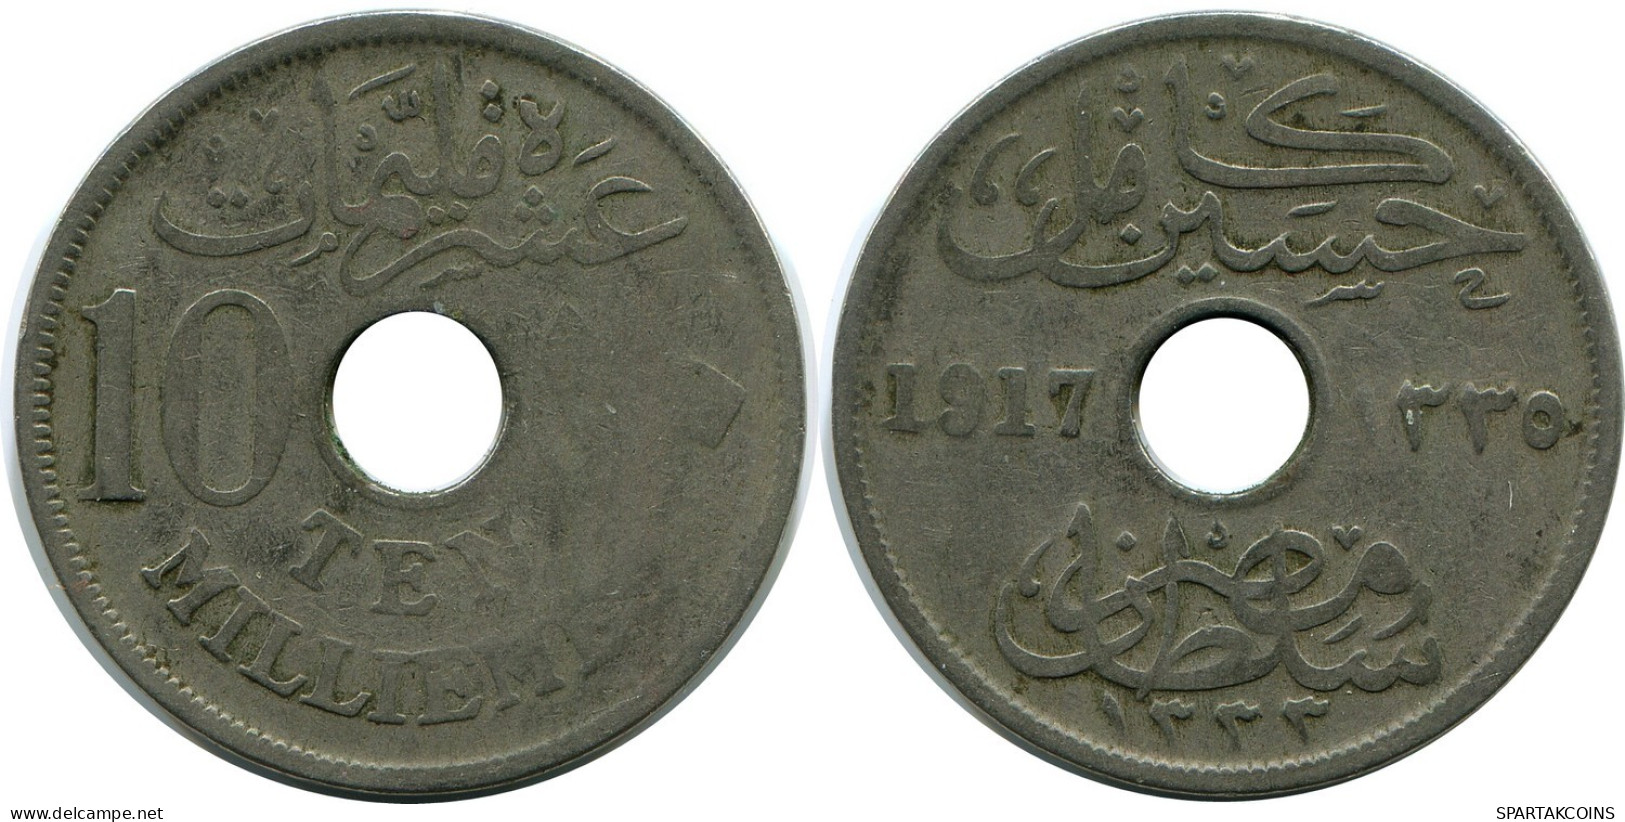 10 MILLIEMES 1917 EGYPT Coin Hussein Kamil #AP117.U.A - Egitto